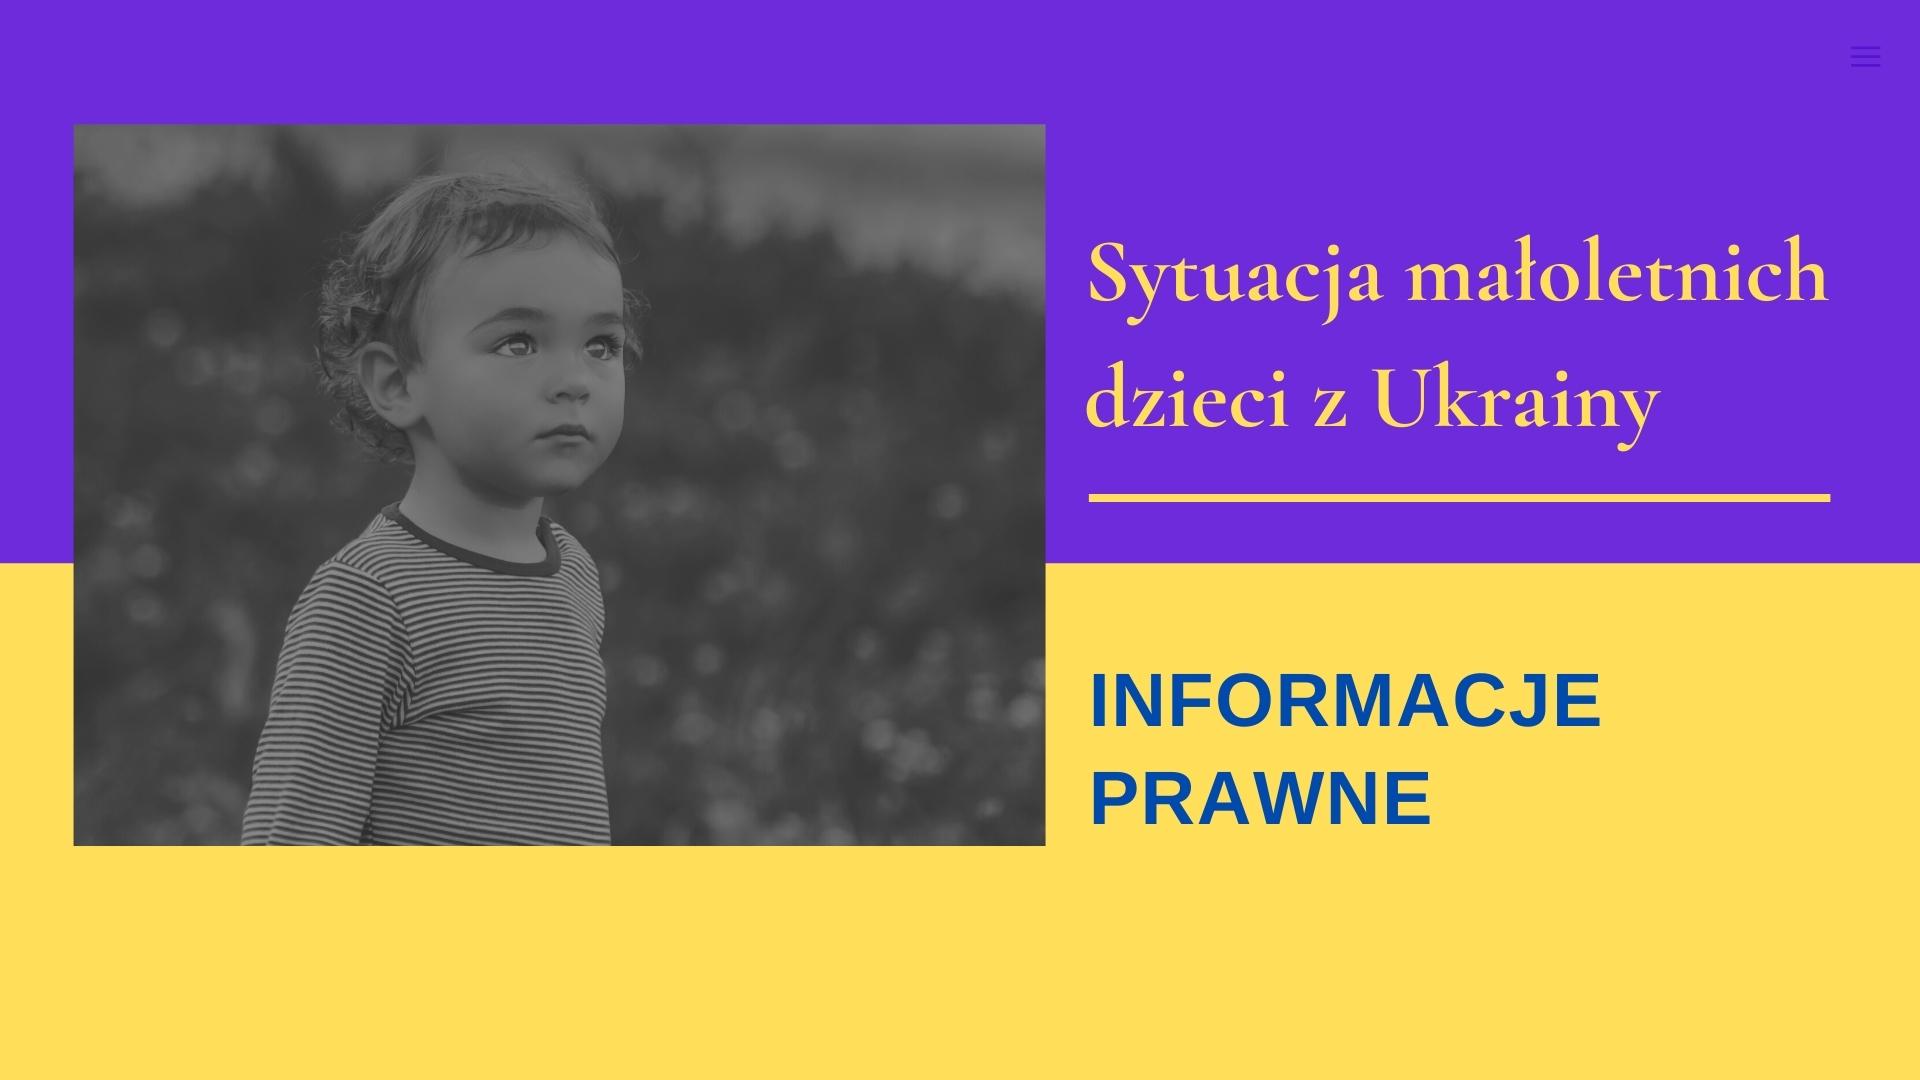 Sytuacja małoletnich dzieci z Ukrainy – informacje prawne